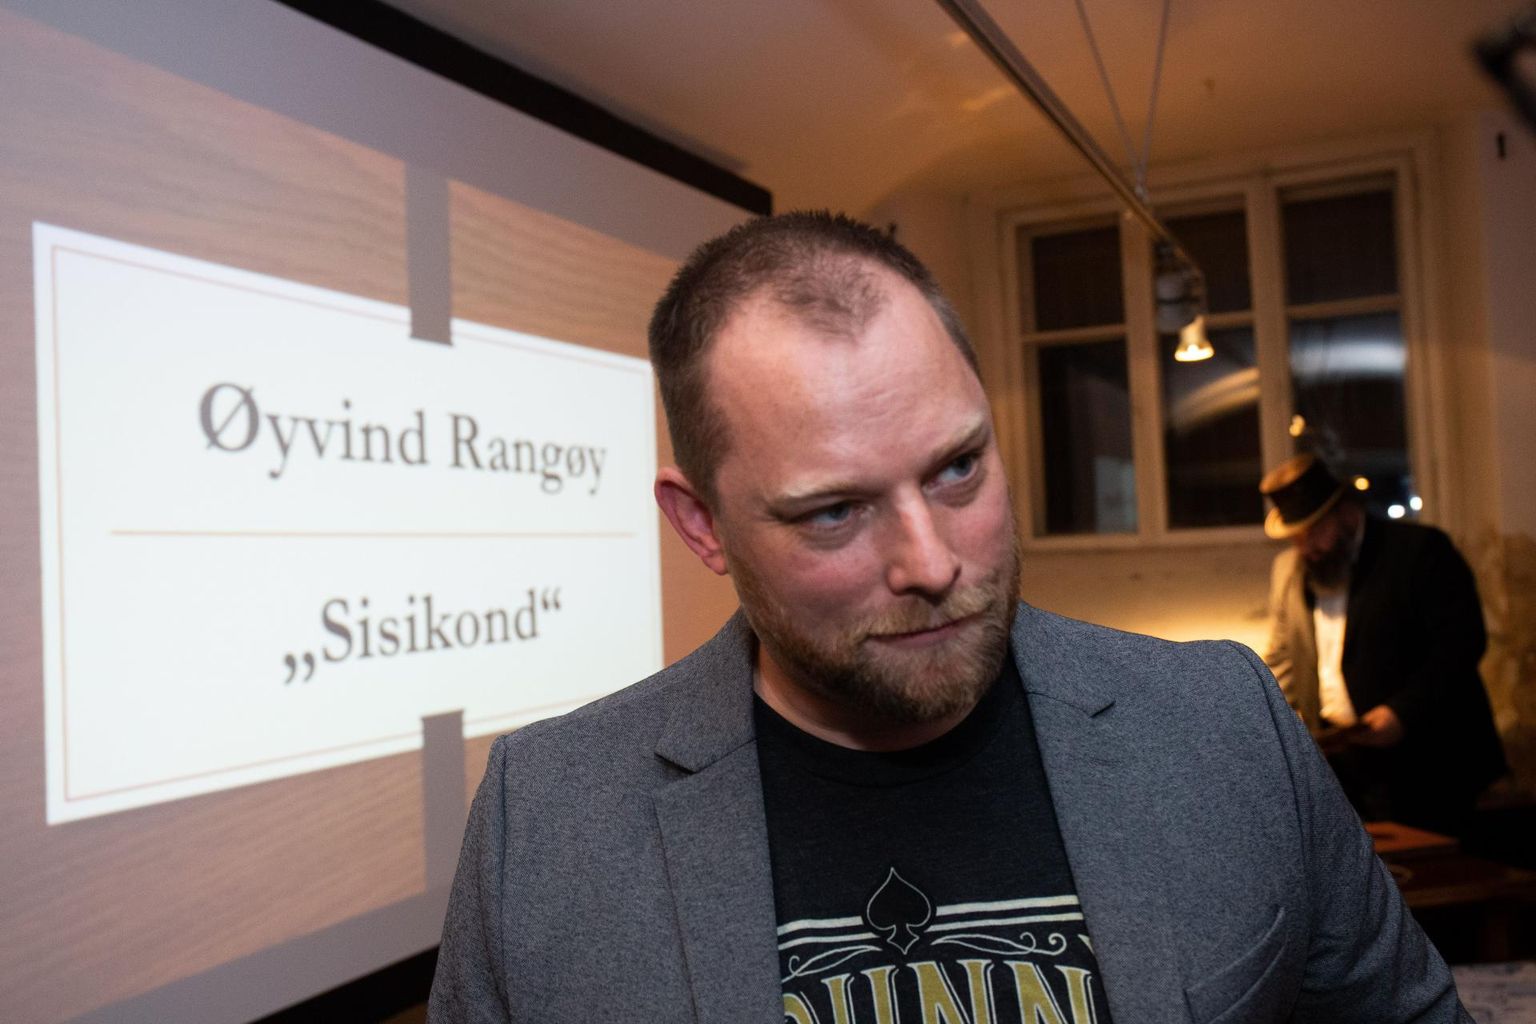 Øyvind Rangøy esimese raamatu pealkiri on «Sisikond», sest see oli esimene eestikeelne sõna, mille ta ära õppis, ja ühtlasi esimene eestikeelne sõna, mille ta ütles oma eestlasest abikaasale.